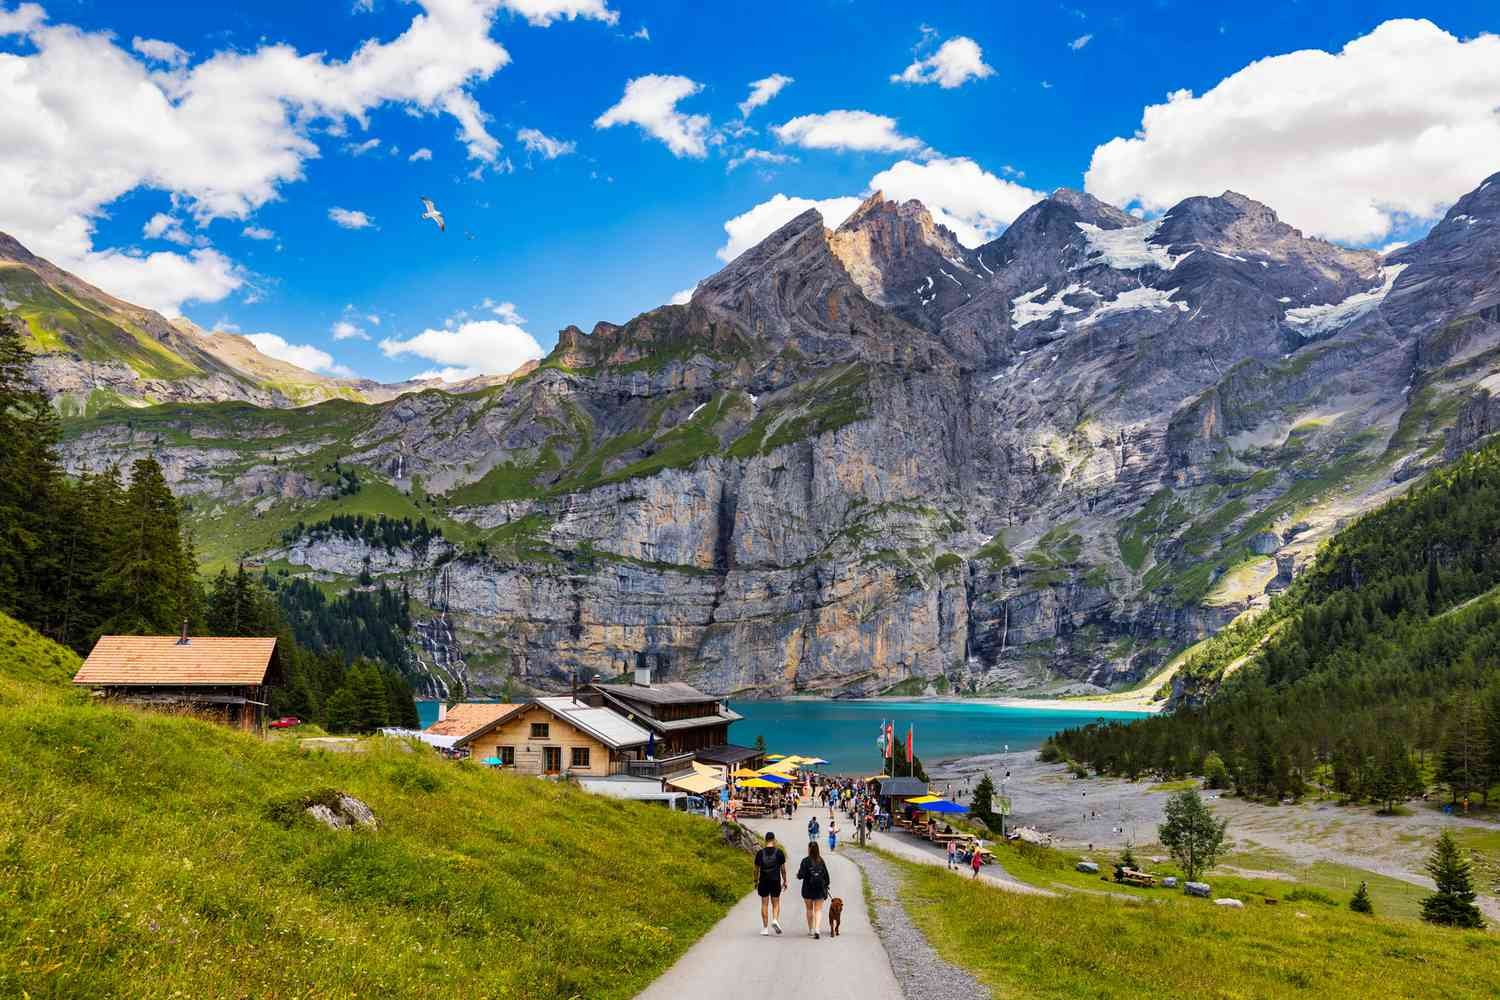 Why Travel to Switzerland